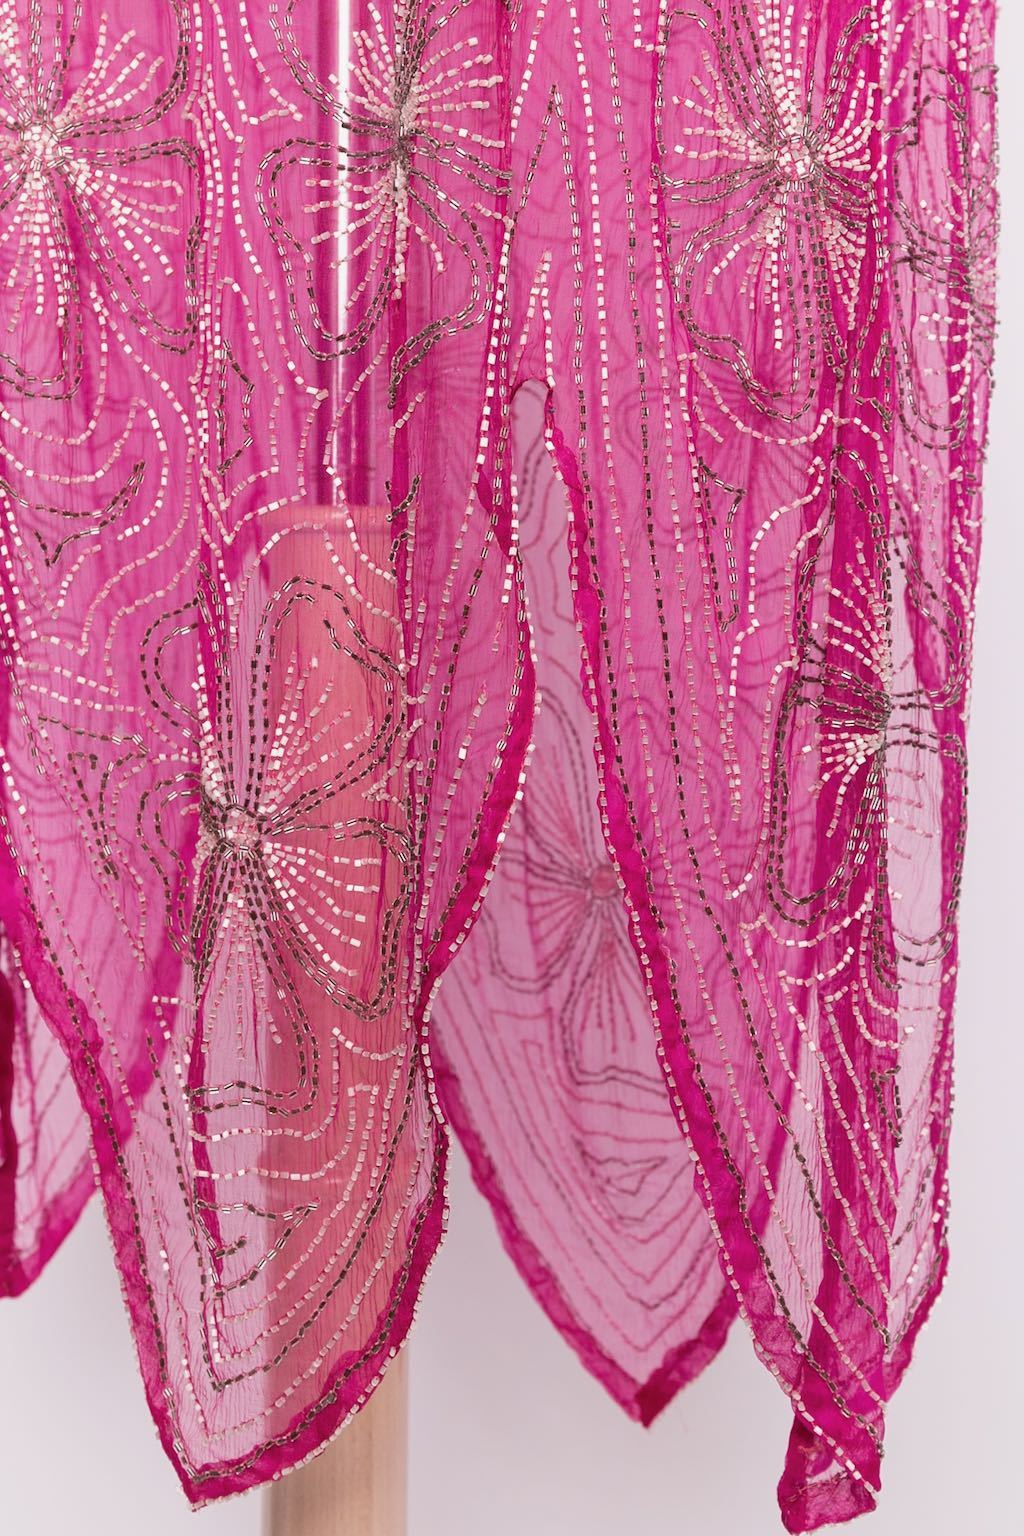 Robe perlée en mousseline de soie rose 1930s